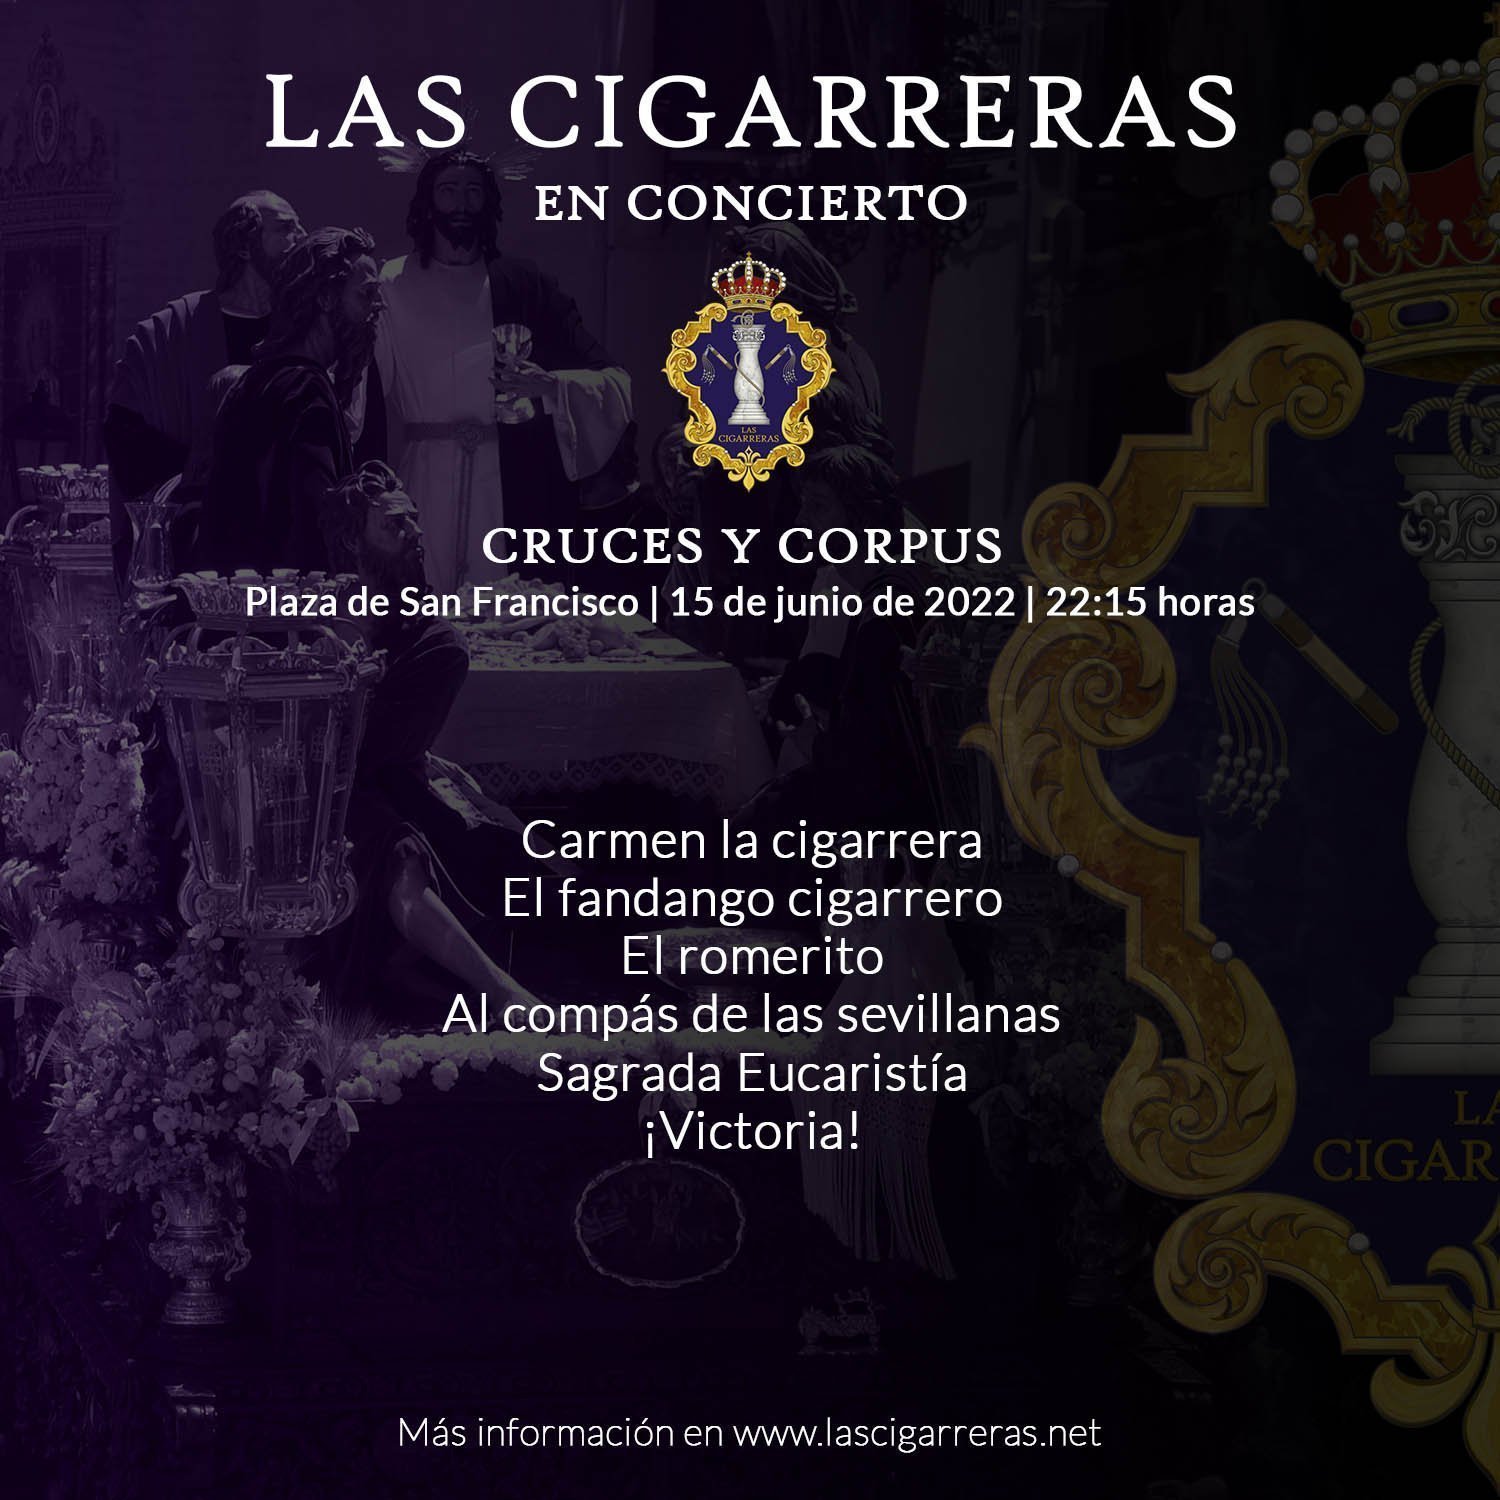 Programa del concierto de Las Cigarreras en la Plaza de San Francisco 2022